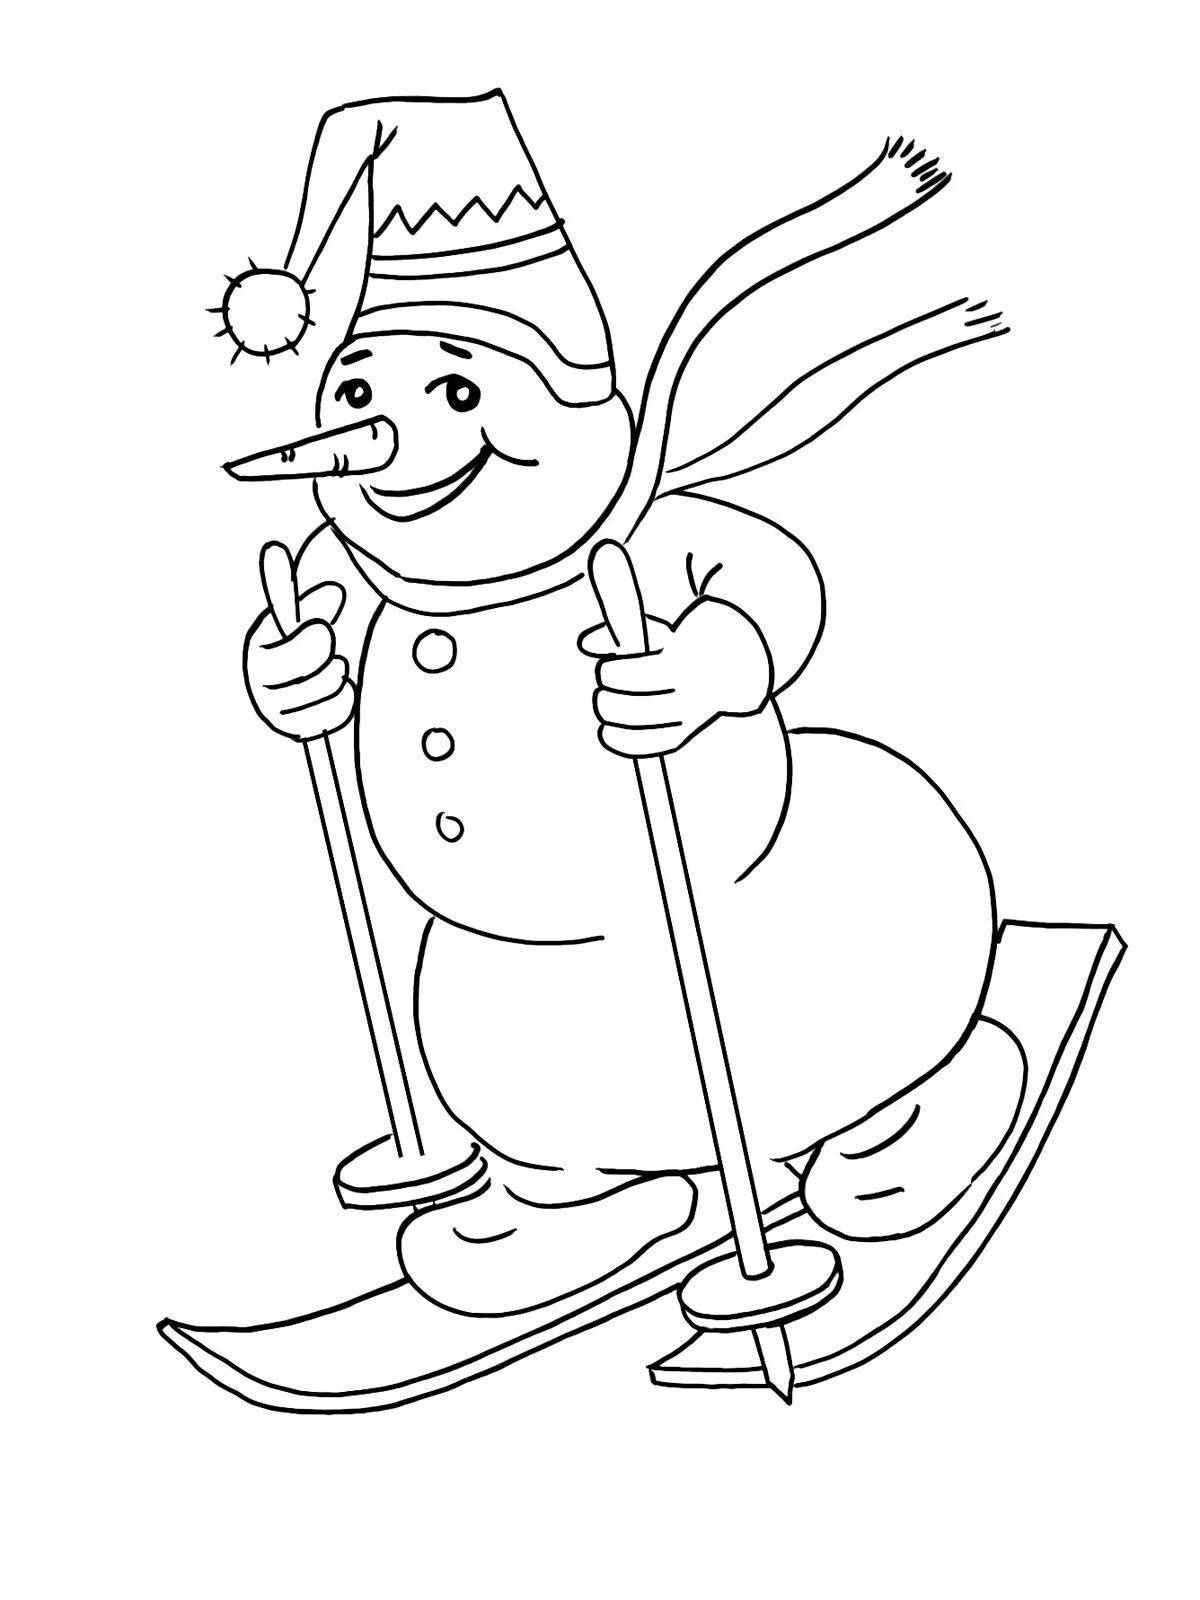 Skating snowman #3